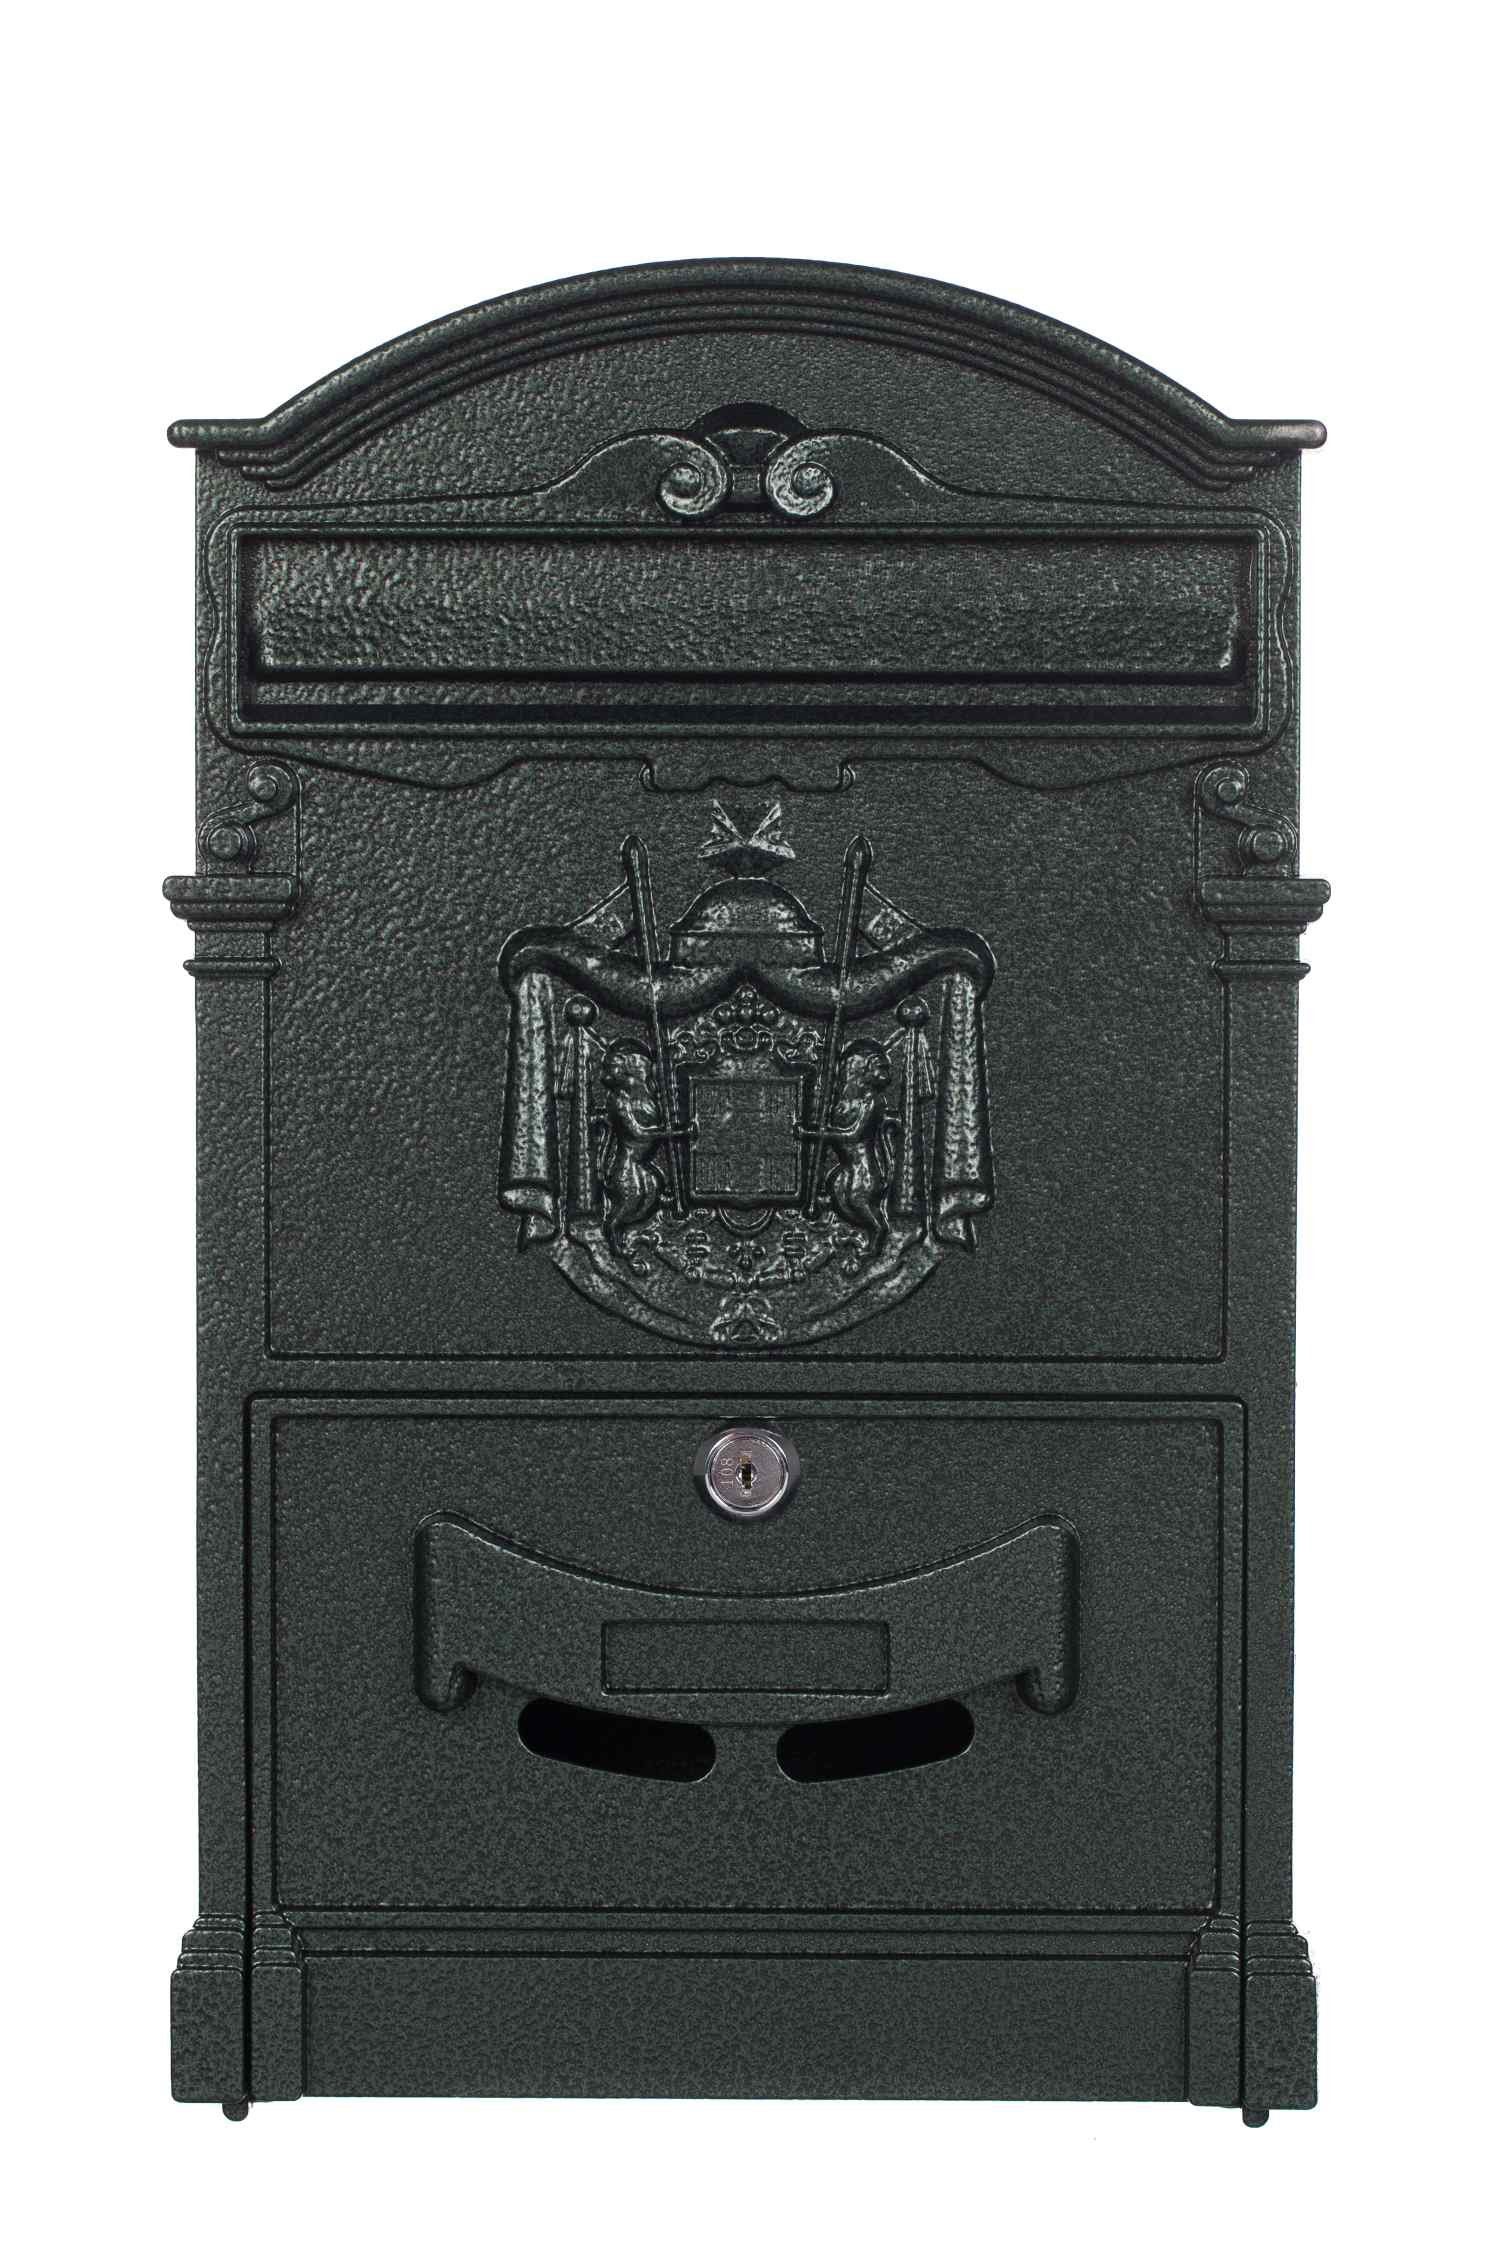 BIRENDY Briefkasten Antiker großer Briefkasten LB-001 Grün Wandbriefkasten Nostalgisch edel